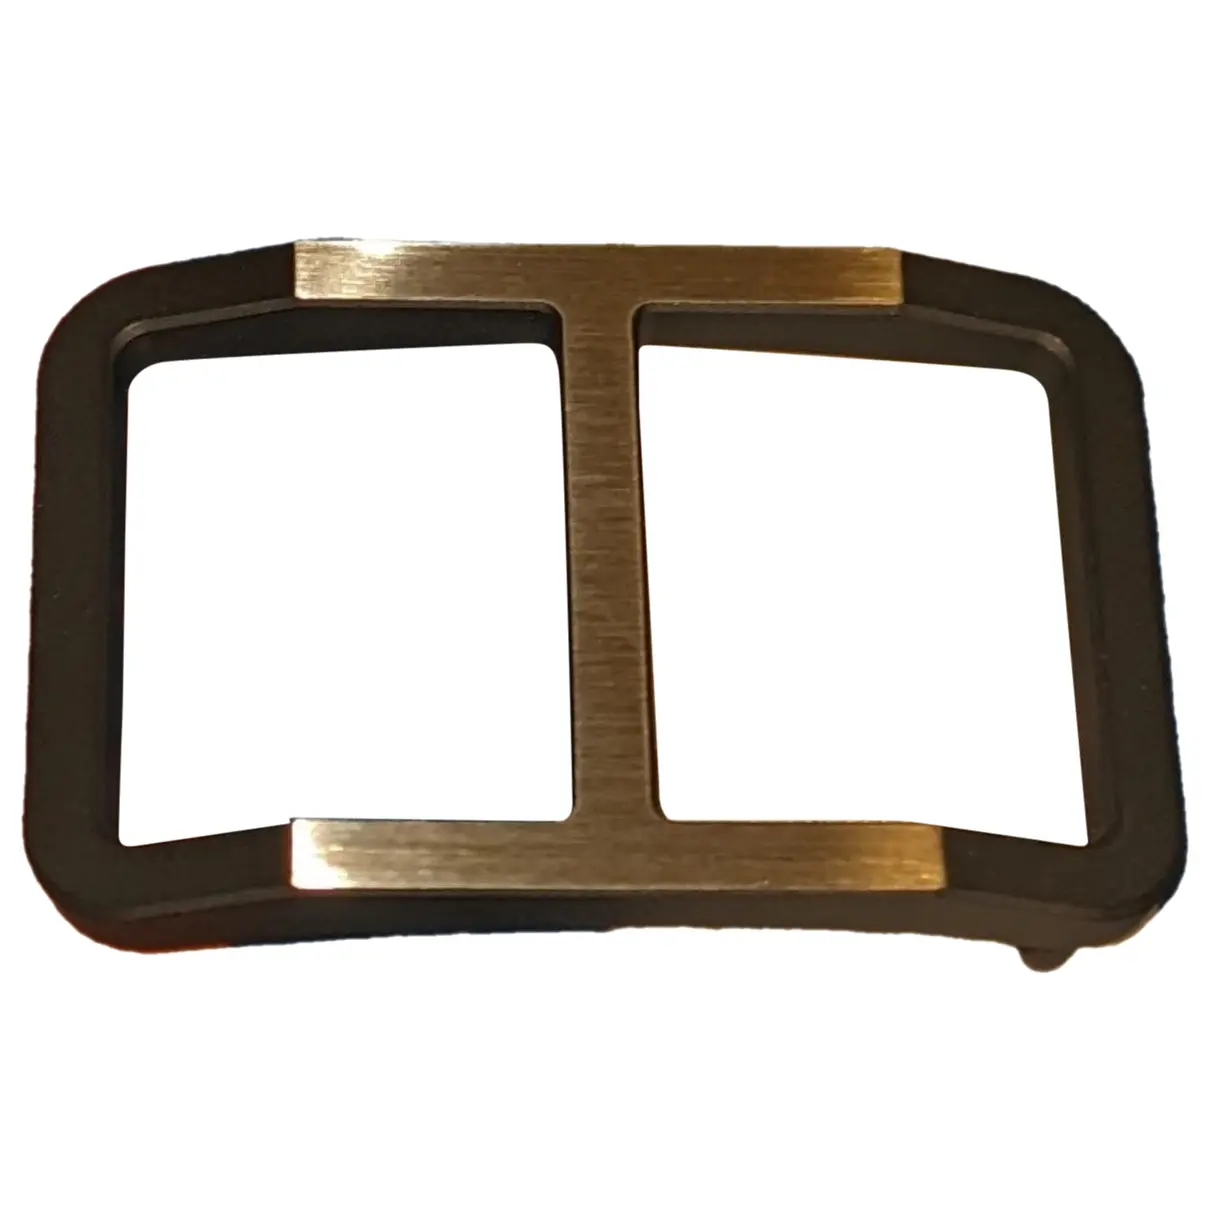 Boucle seule / Belt buckle belt